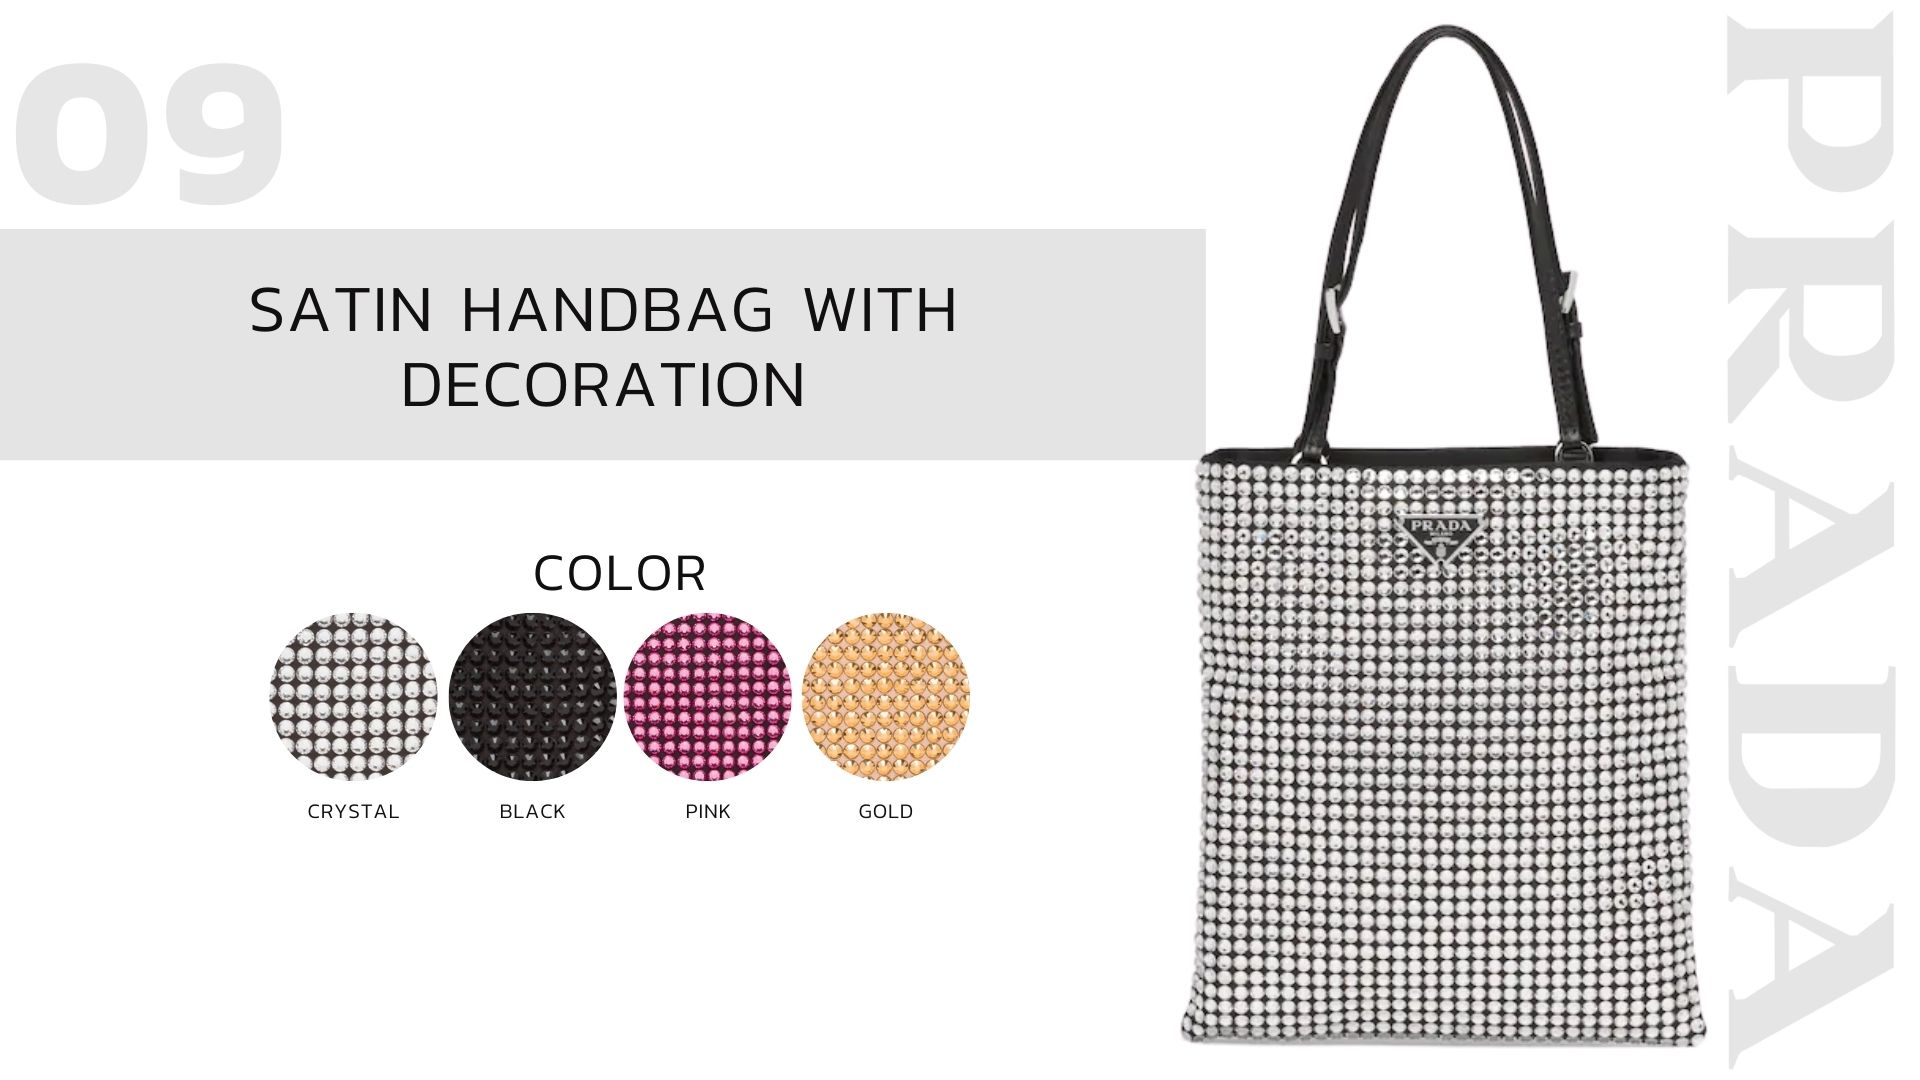 เปิดตัวกระเป๋าใหม่ Prada ที่จะมาครองตำแหน่ง ITEM ที่น่าจับตามอง Satin Handbag with Decoration